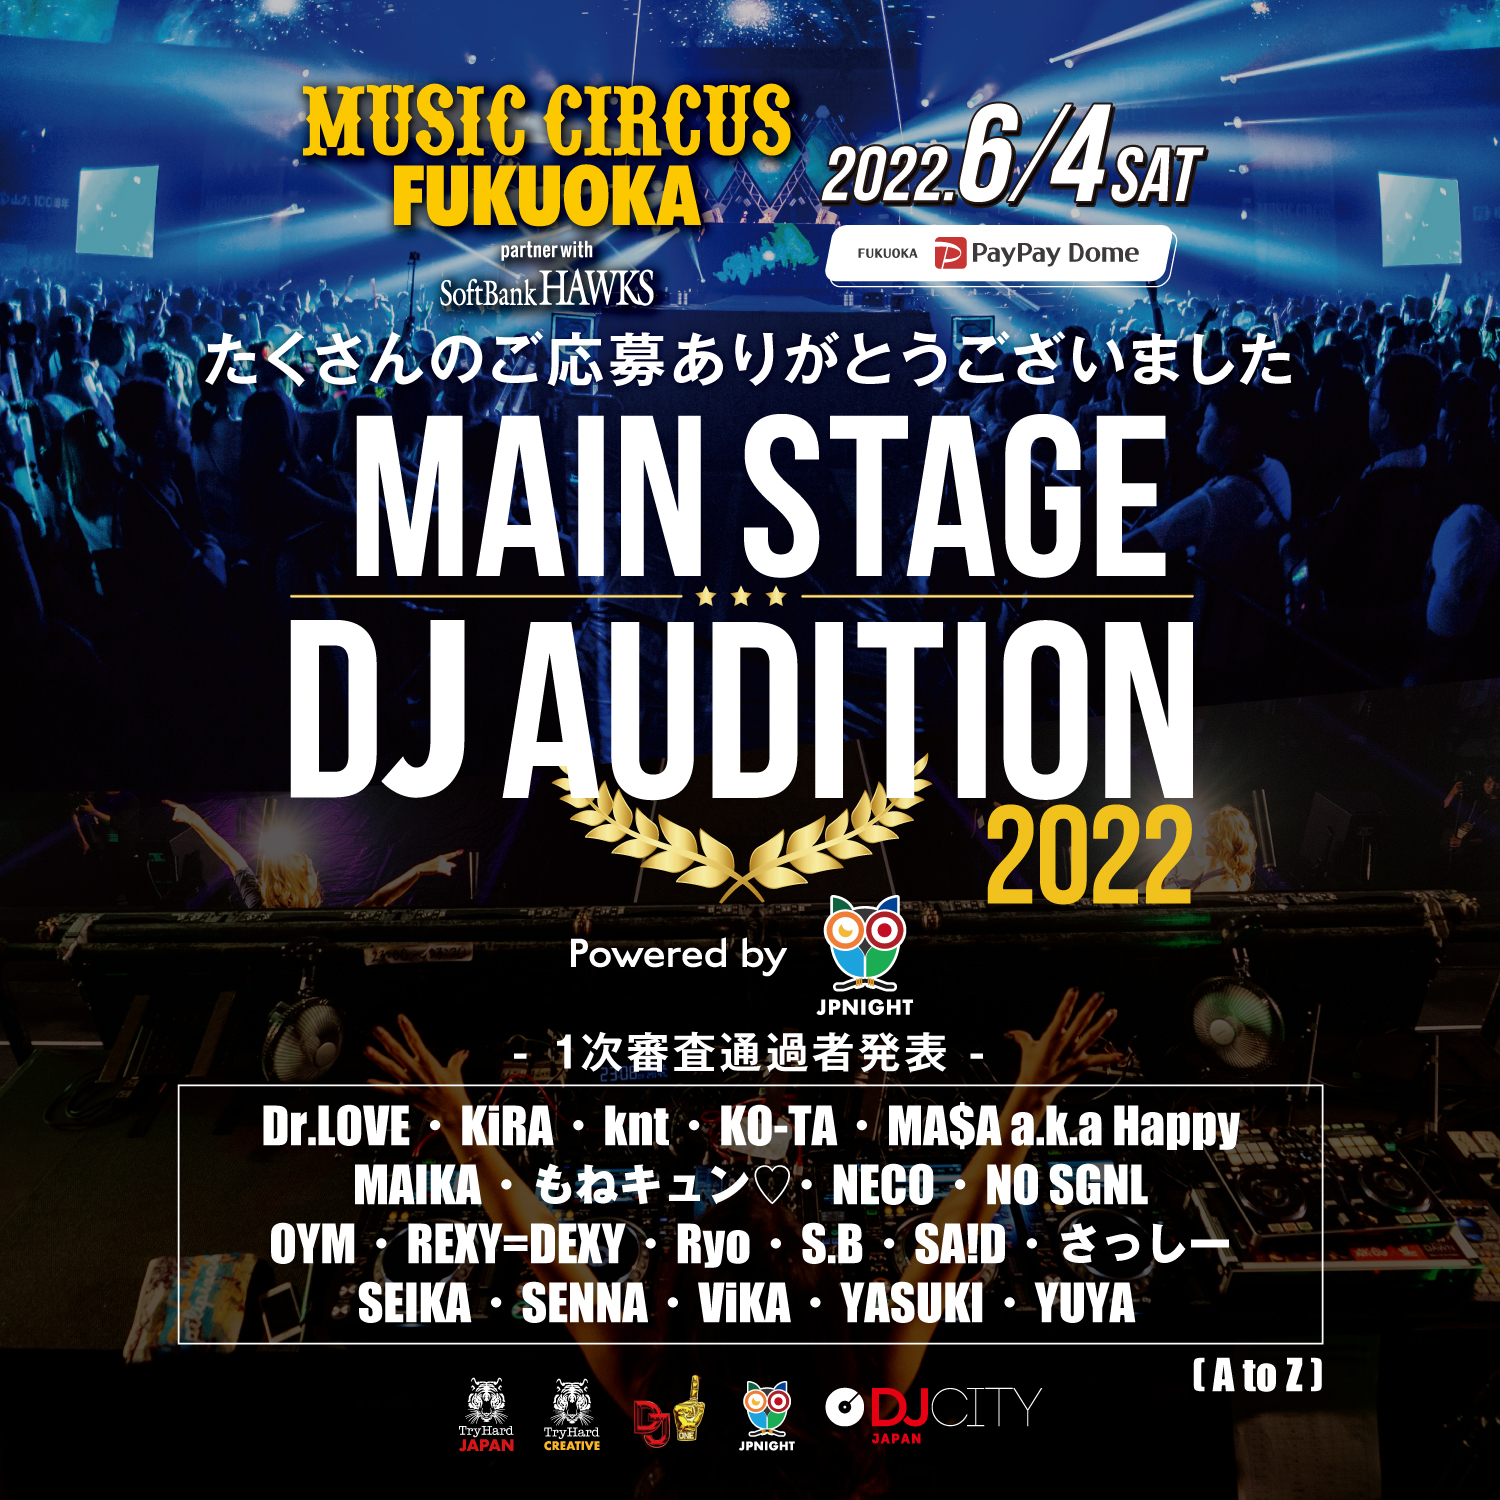 MAIN STAGE DJ AUDITION 2022 | MUSIC CIRCUS FUKUOKAのメインステージ出演をかけた公式DJ オーディション